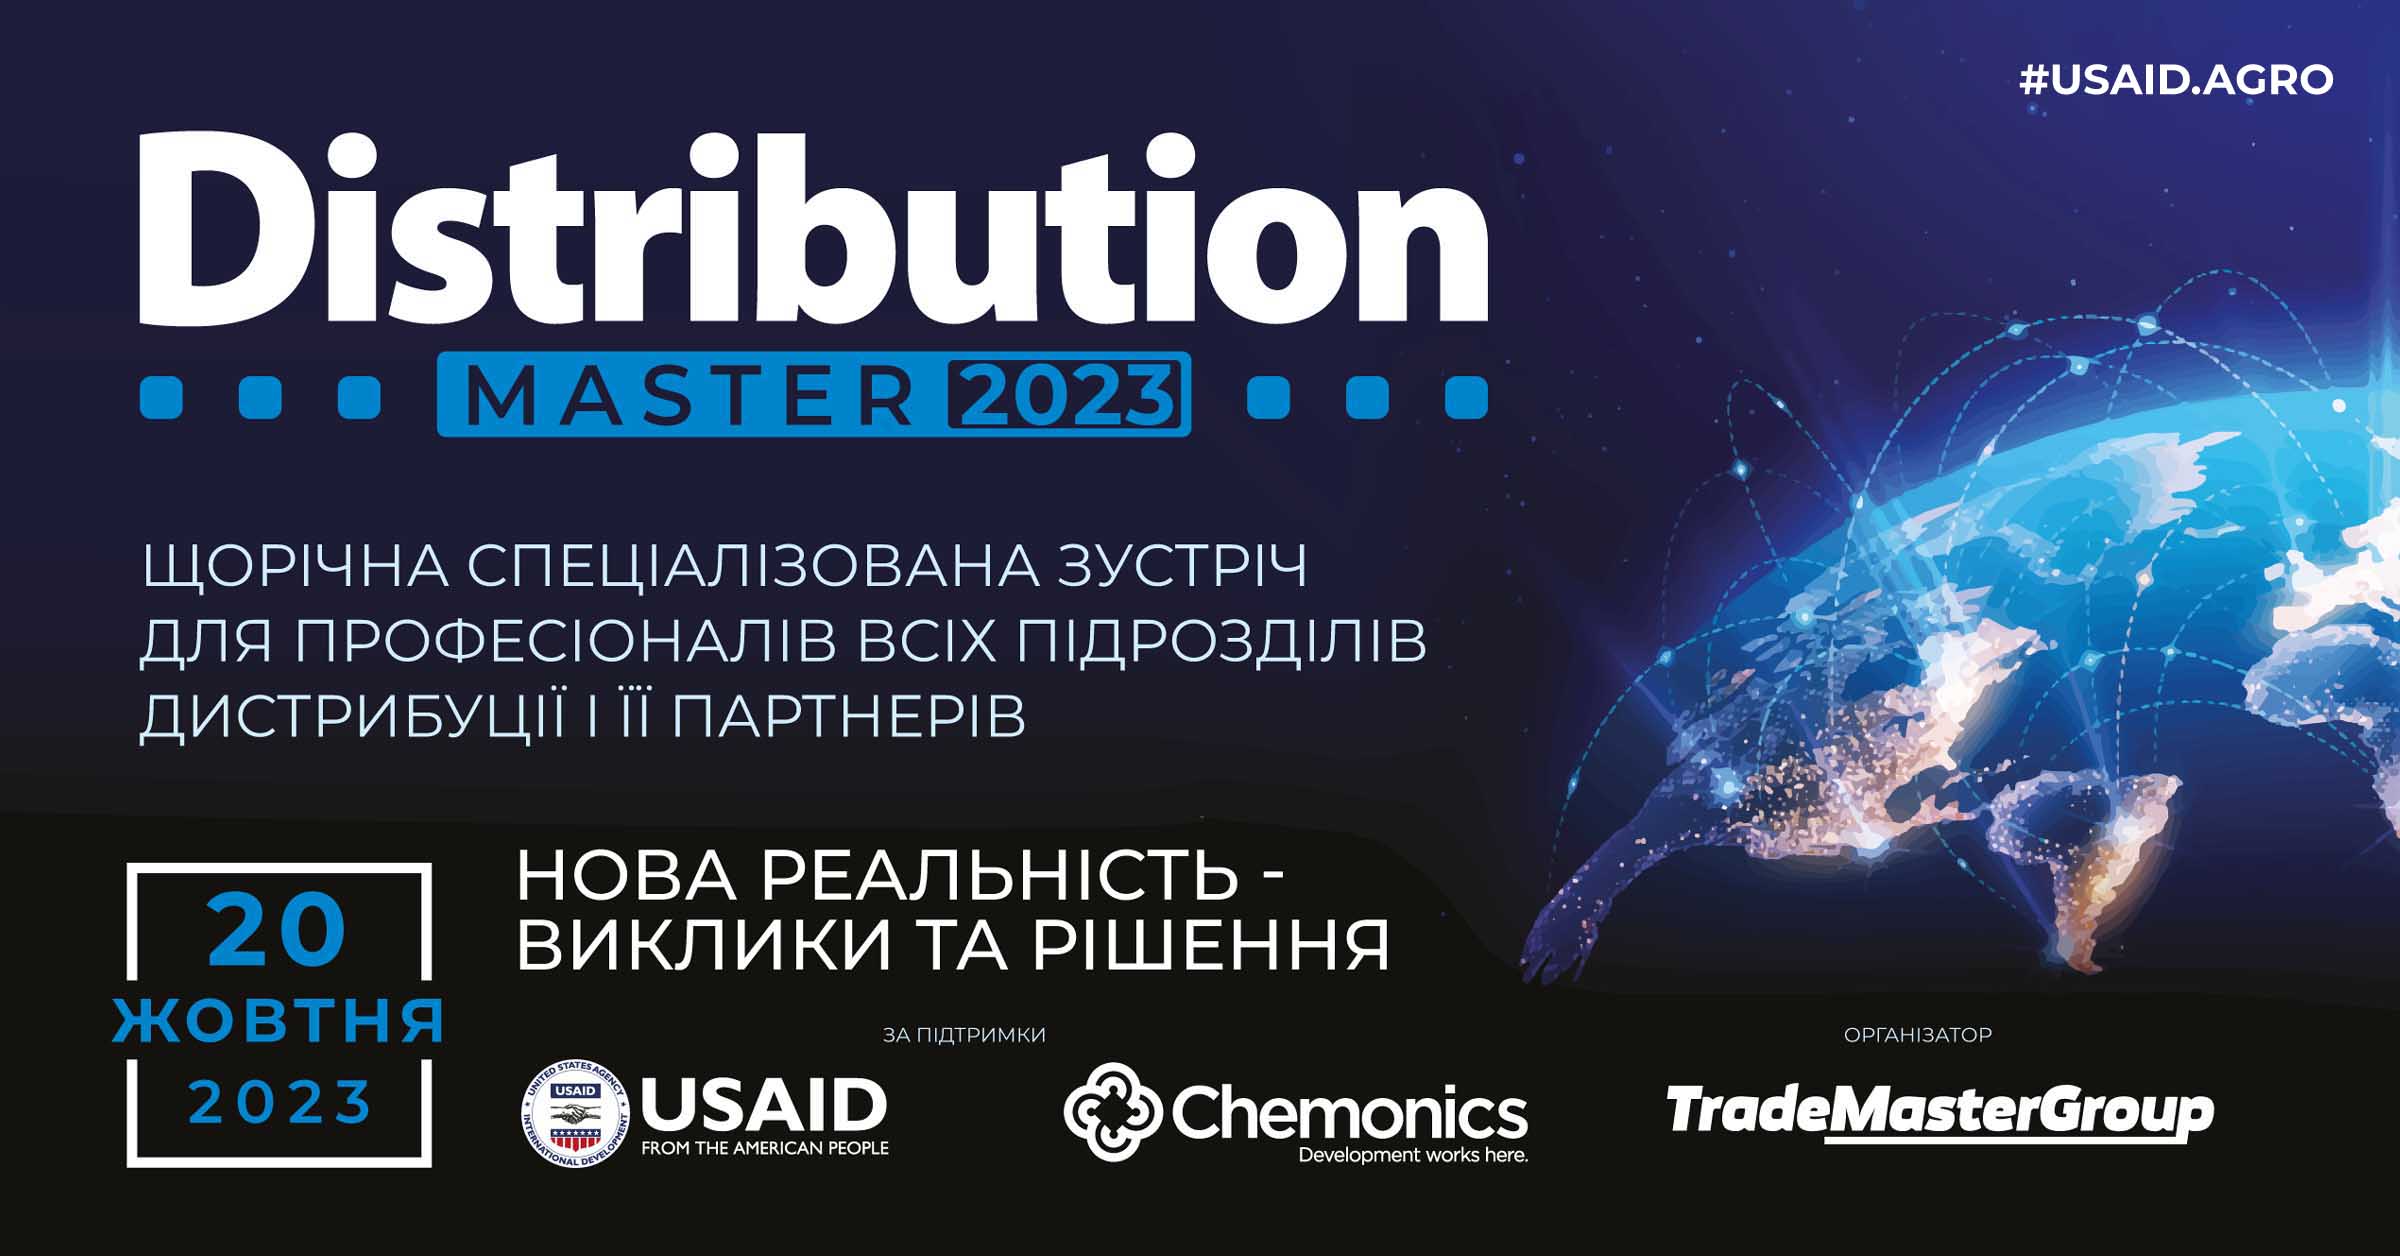 20 жовтня пройде конференція DistributionMaster-2023: «Нова реальність-виклики та рішення»